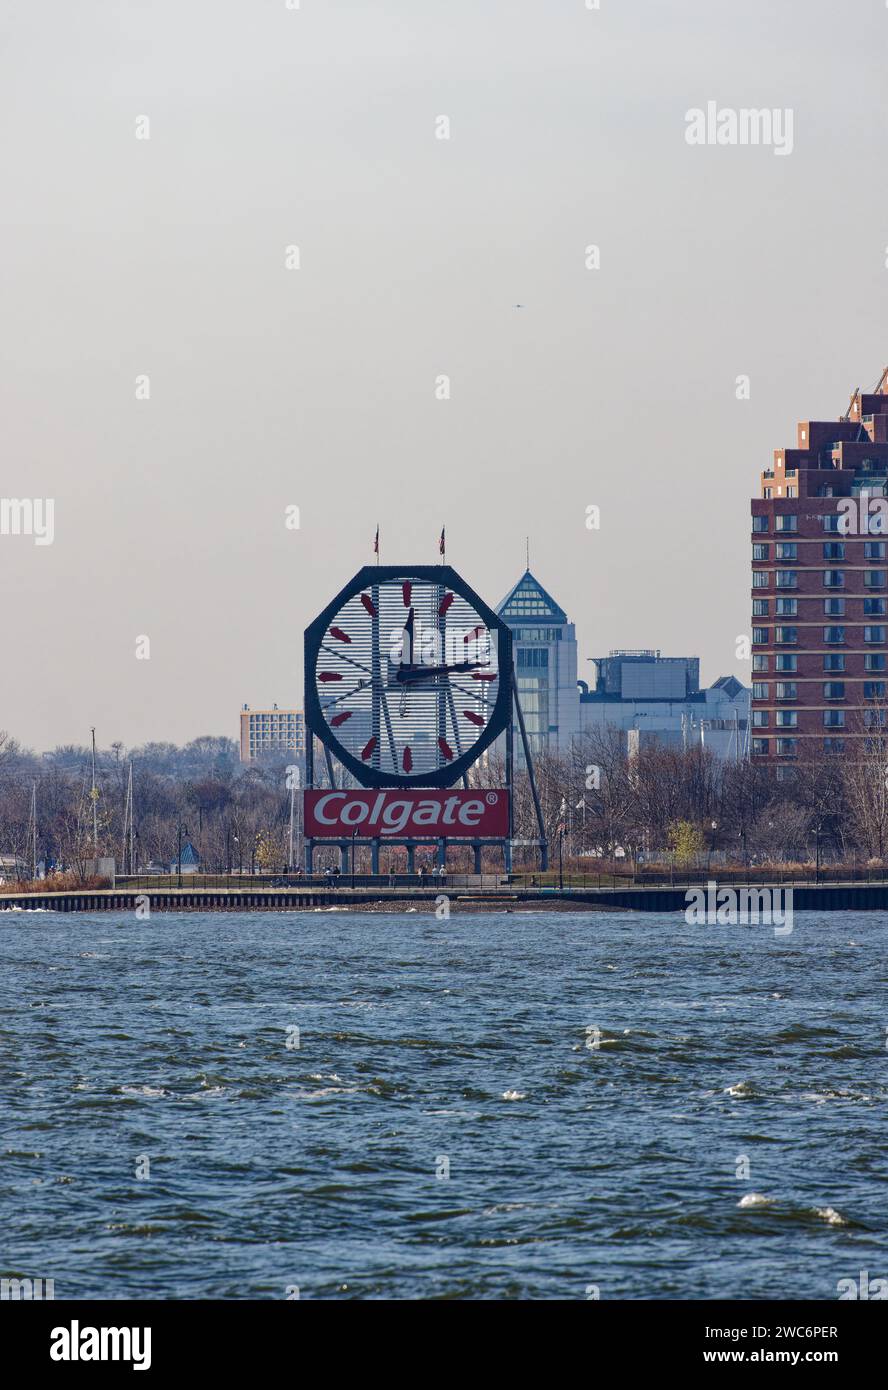 Colgate Clock, ein inoffizielles Wahrzeichen, das ursprünglich auf dem Colgate-Palmolive Hauptquartier in der Hudson Street lag, wird heute vom benachbarten Goldman Sachs gepflegt. Stockfoto